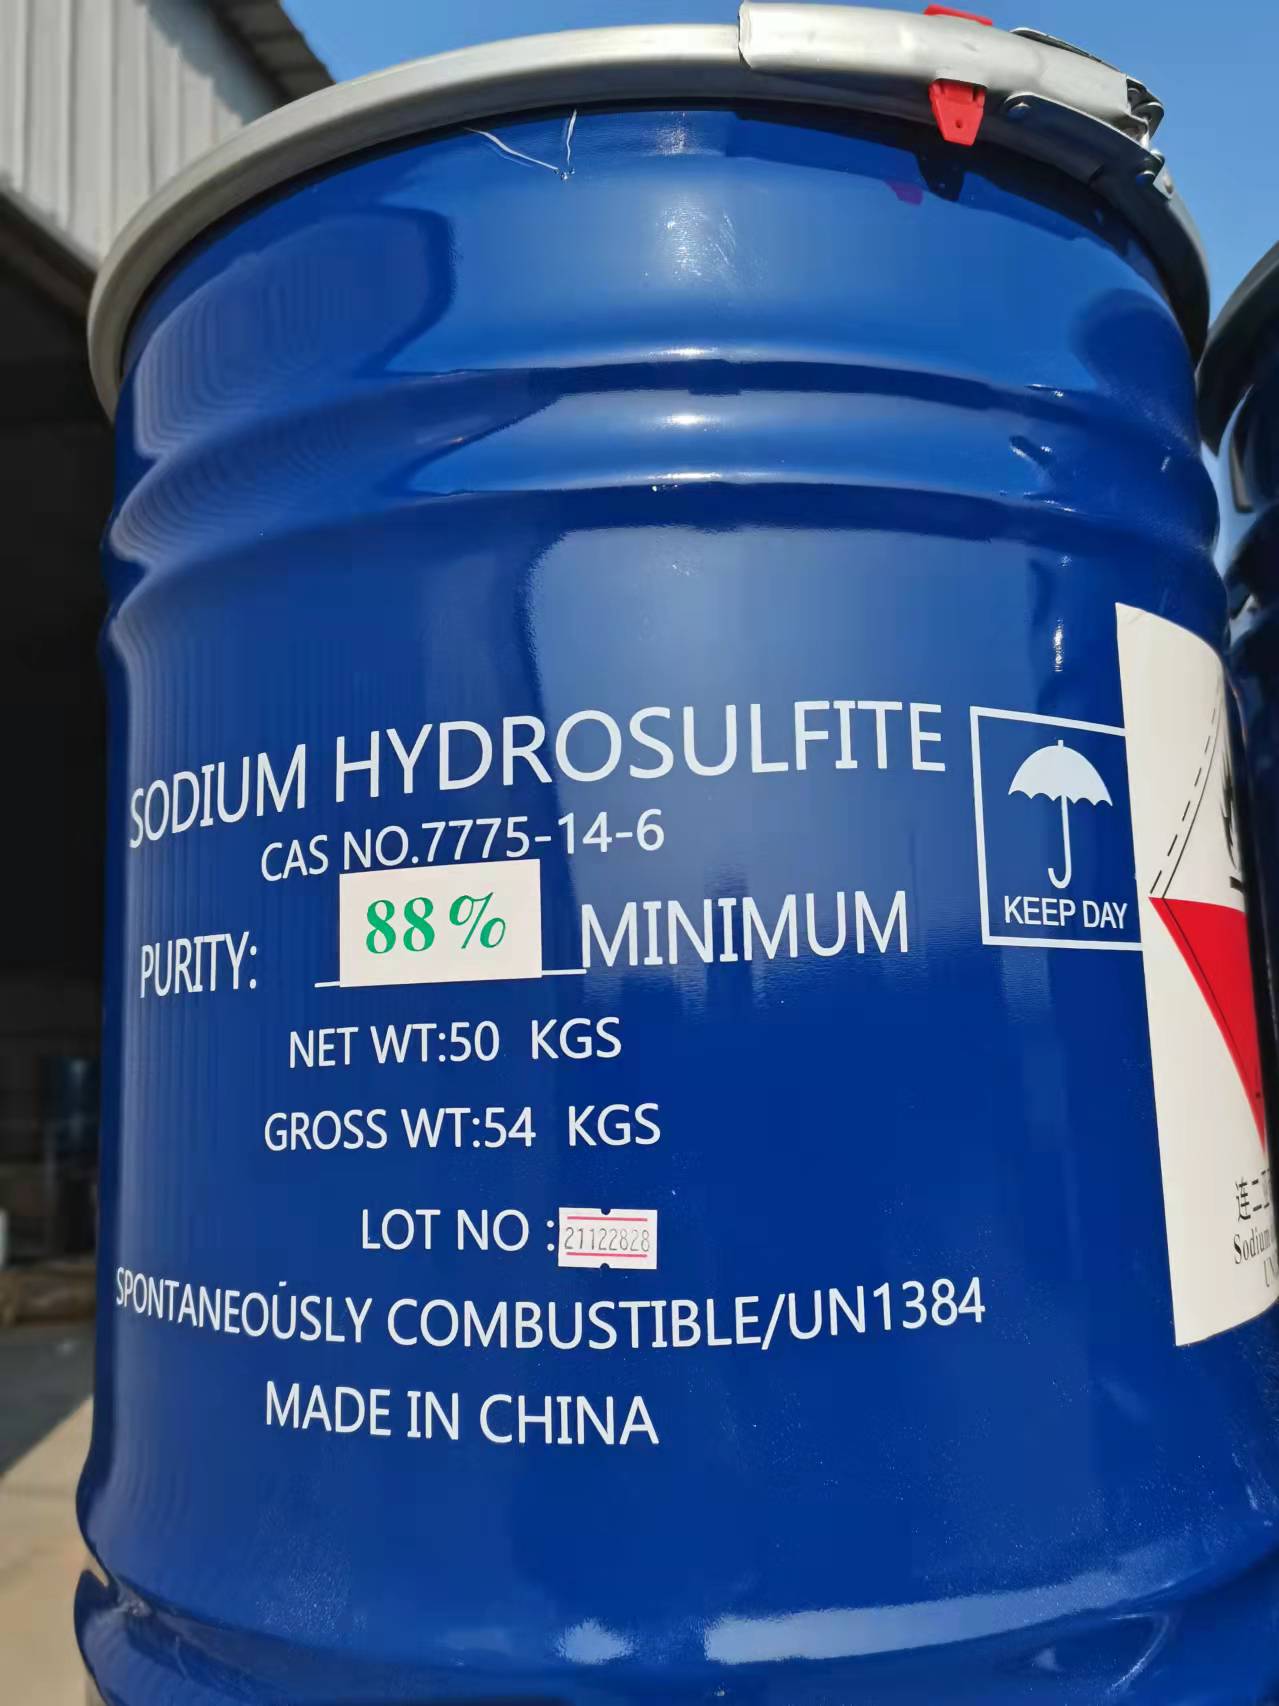 Sodium Dithionite Harga Pabrik Berkualitas Tinggi